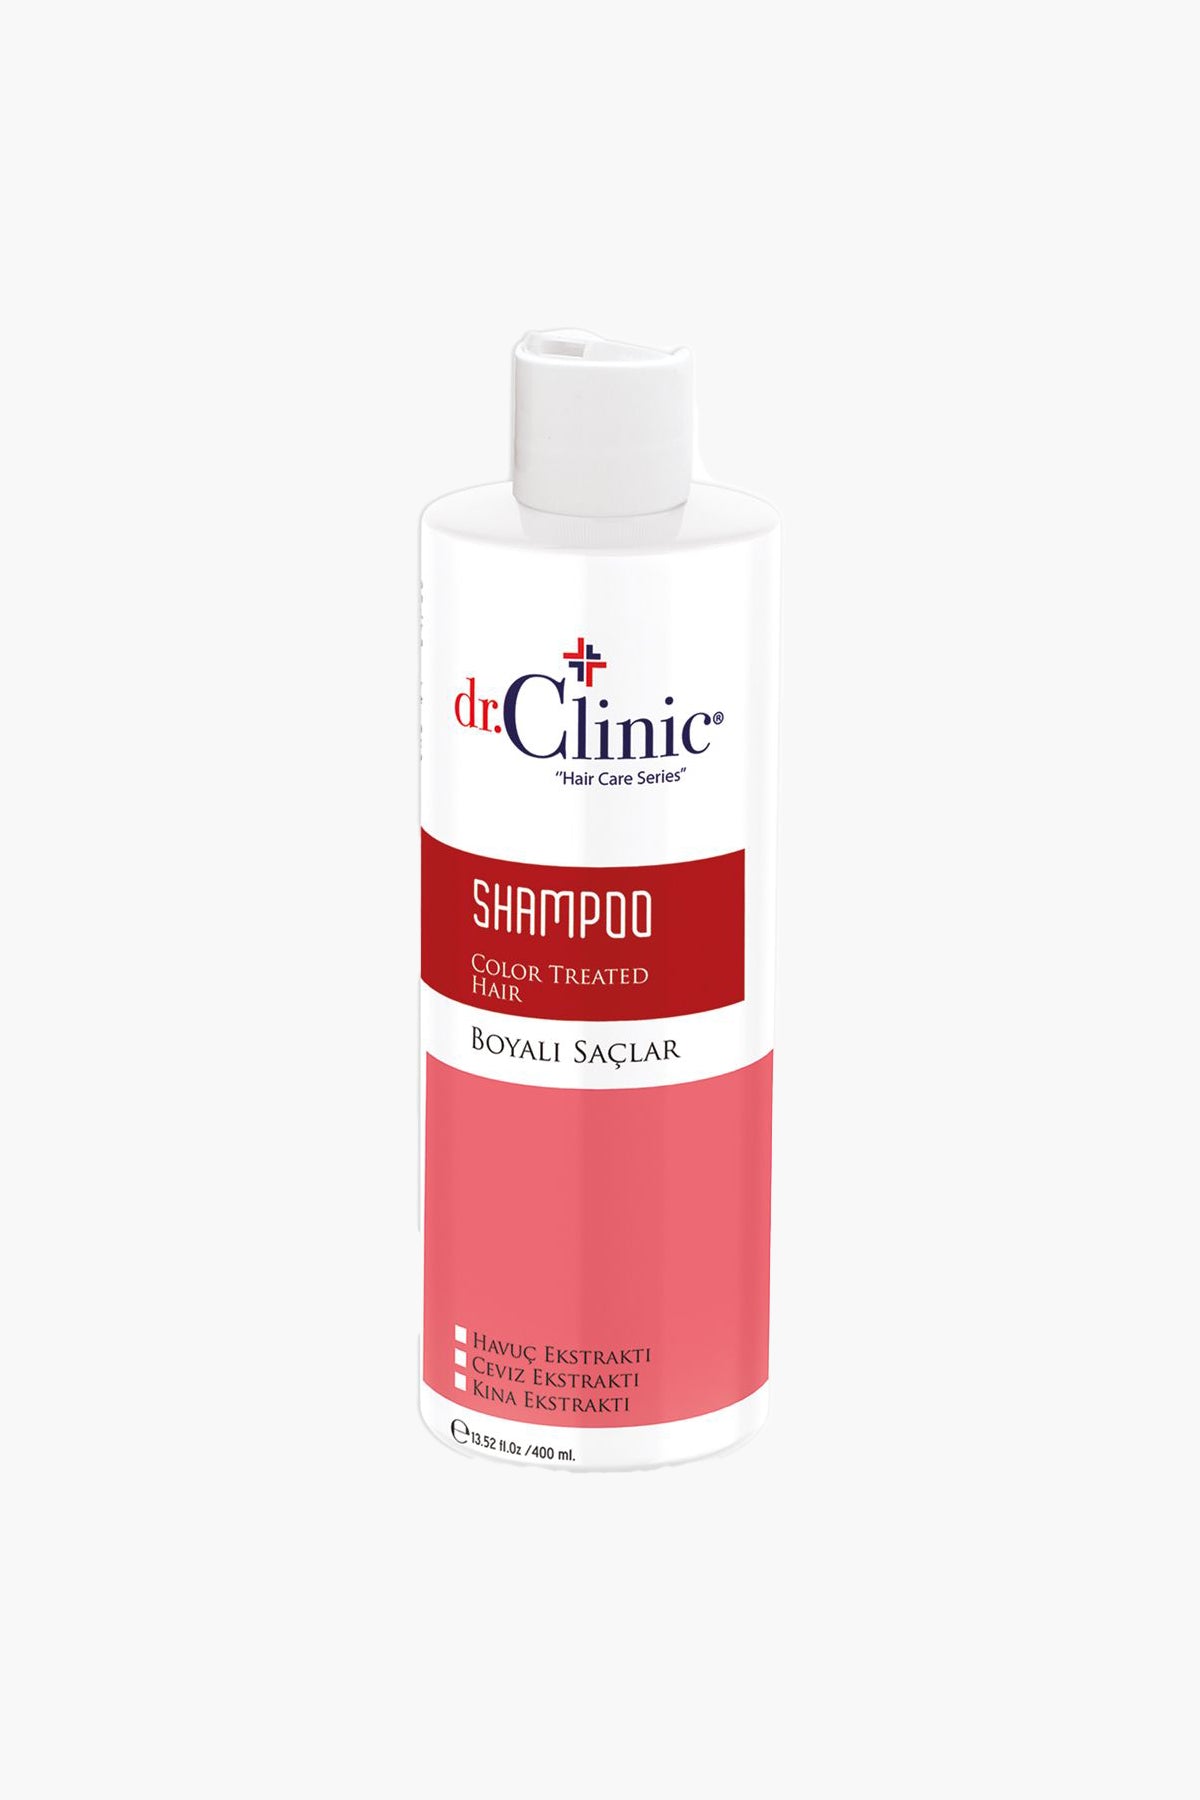 Shampoo - Color Treated Hair 400 ml - Dr.Clinic